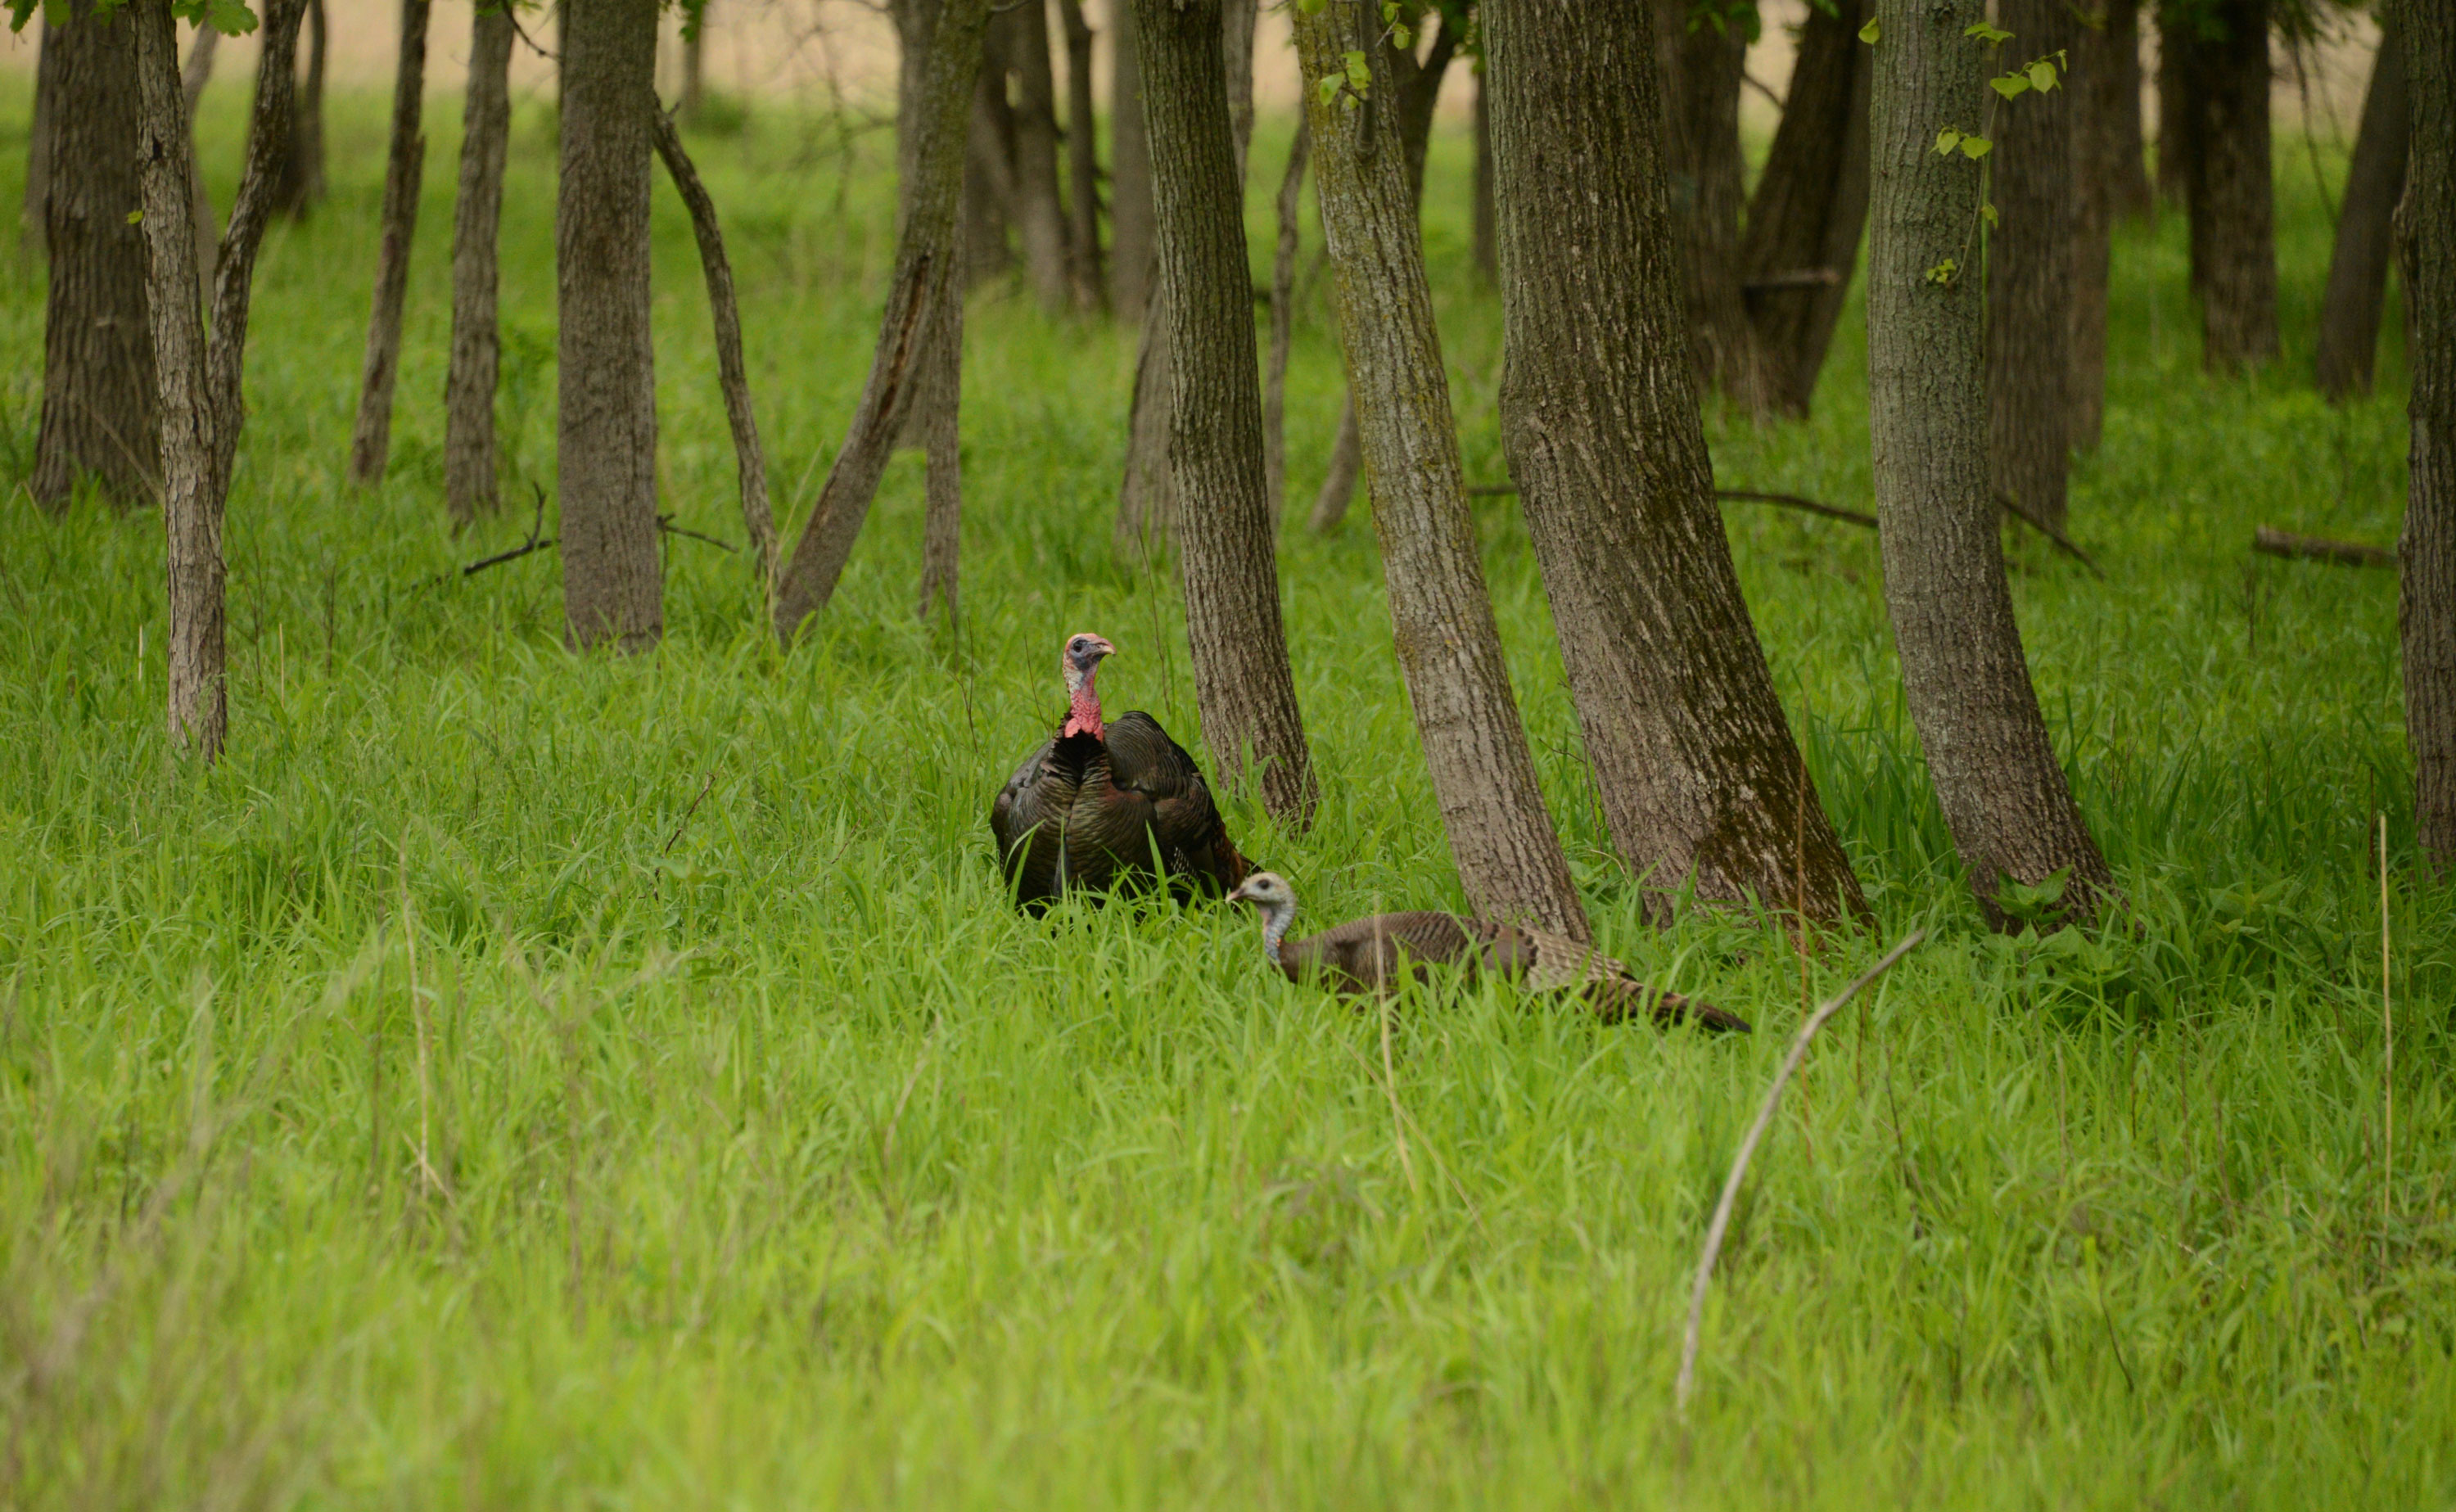 A wild turkey standing in a field.